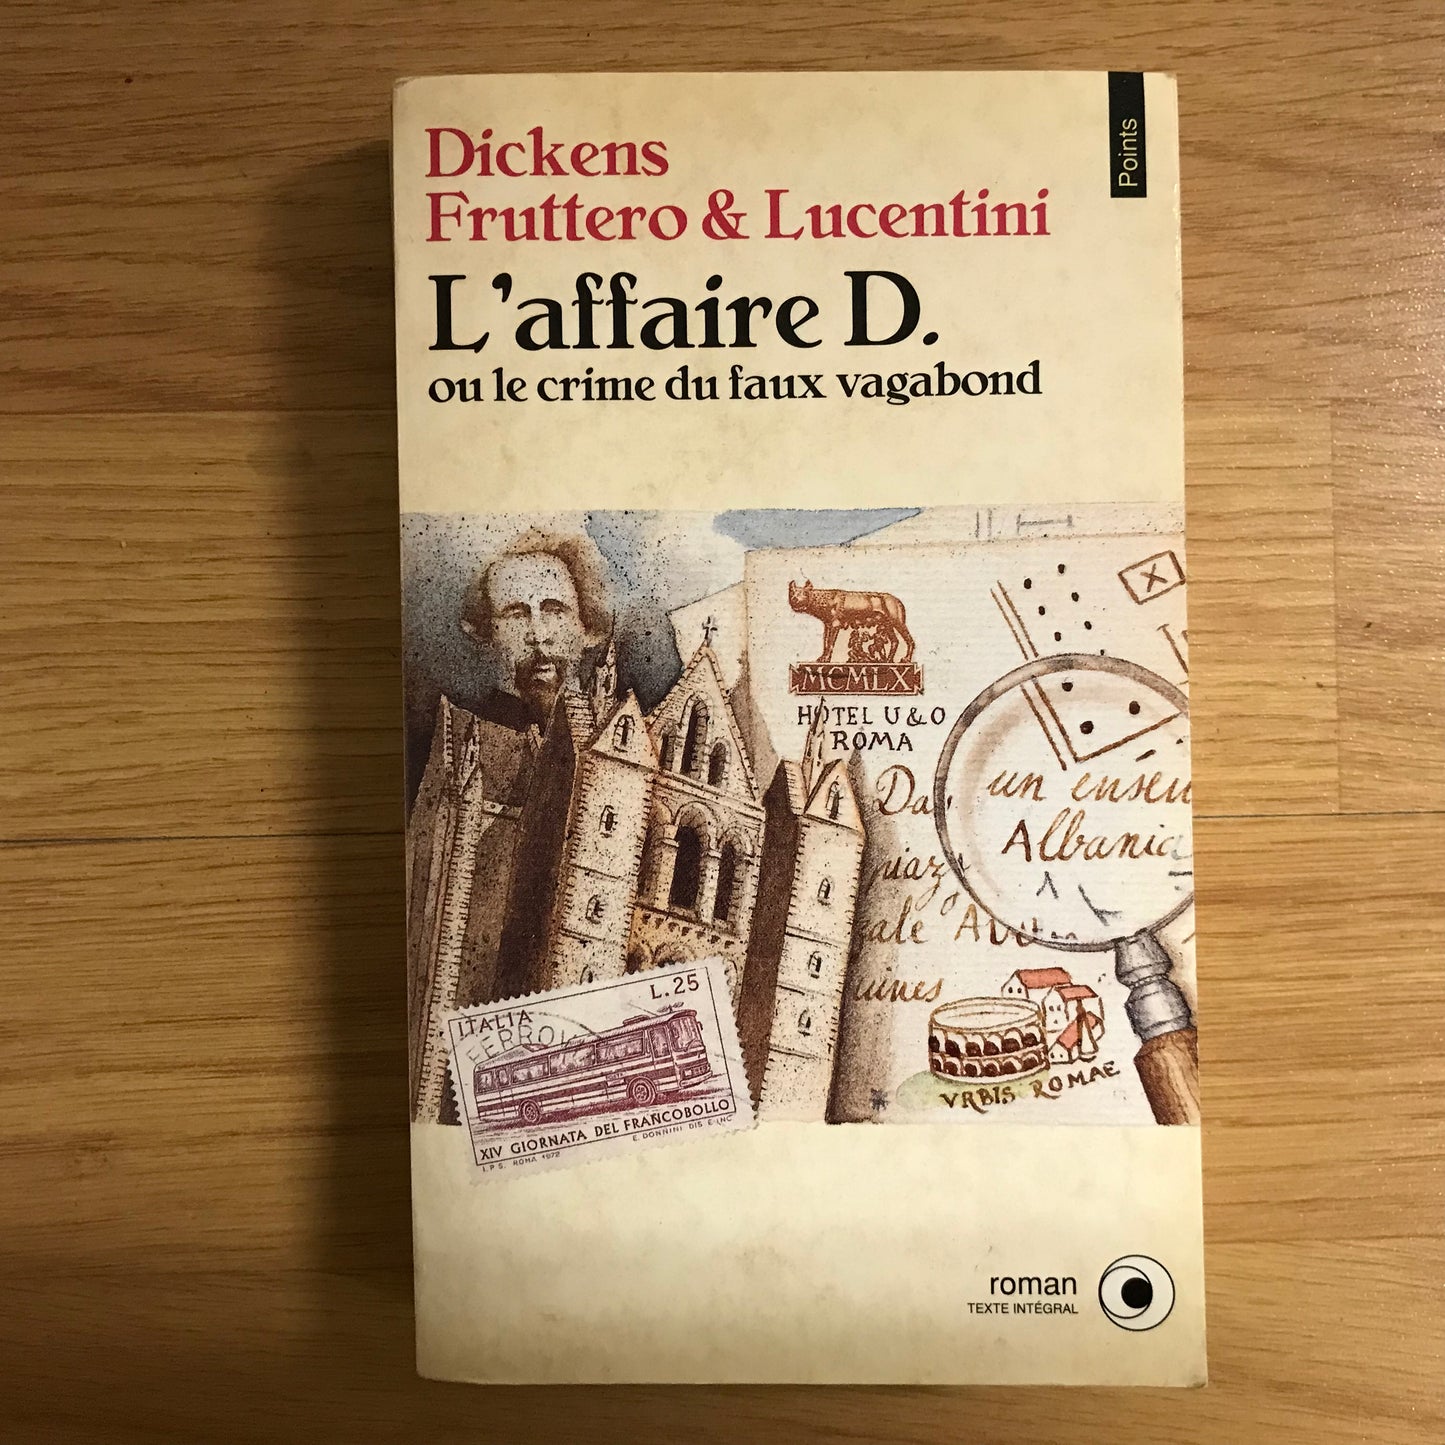 Dickens, Fruttero & Lucentini - L’affaire D. Ou le crime du faux vagabond